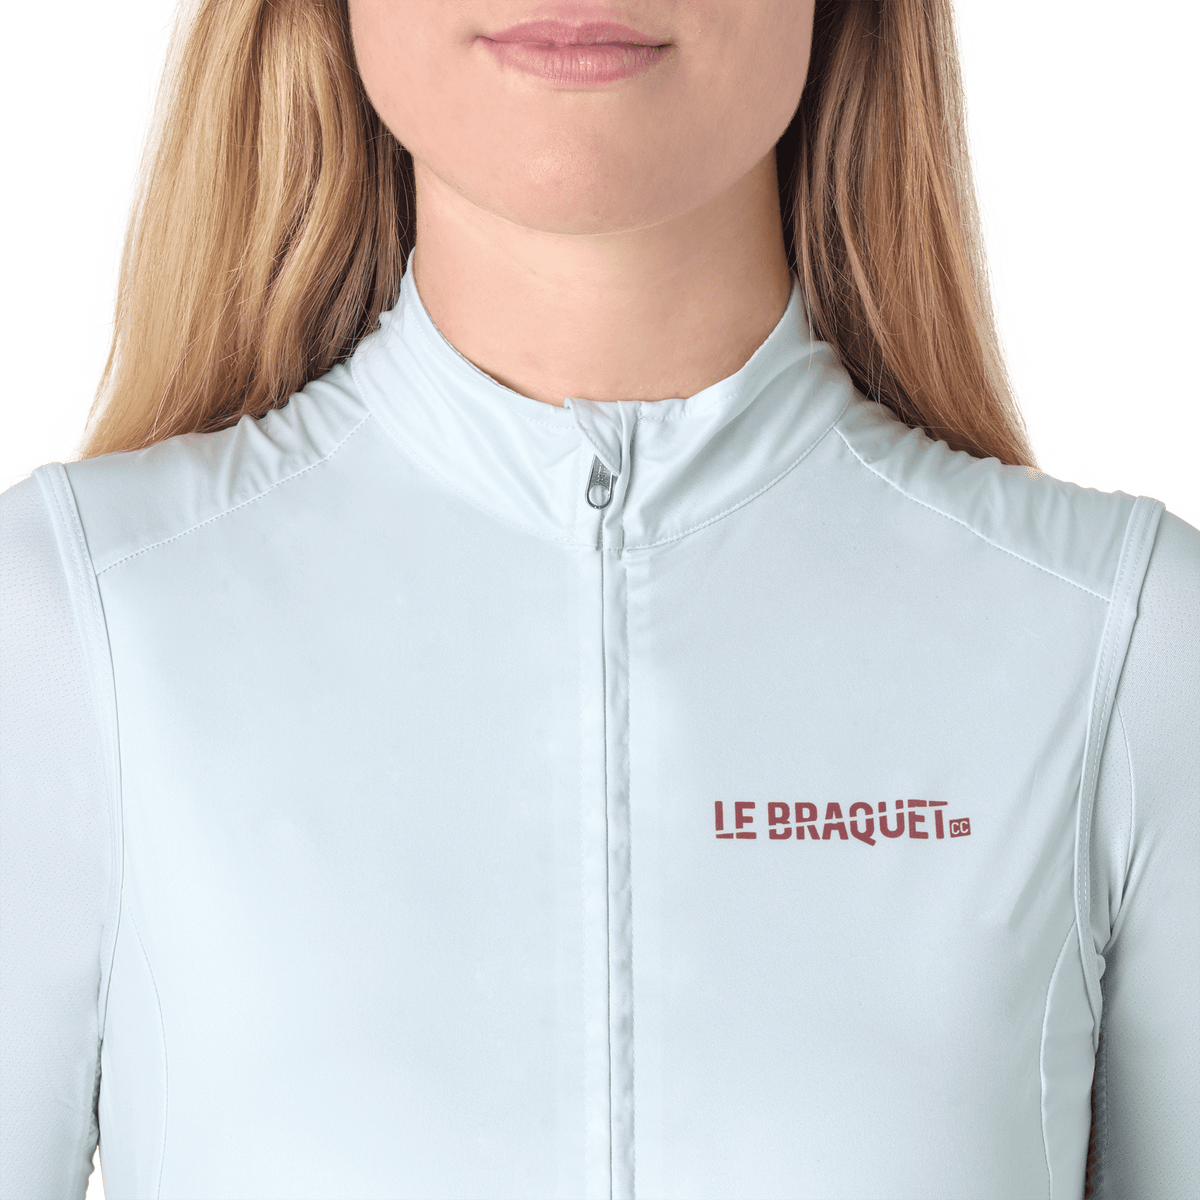 Women's Vests & Gilets – Le Braquet Cycling Club